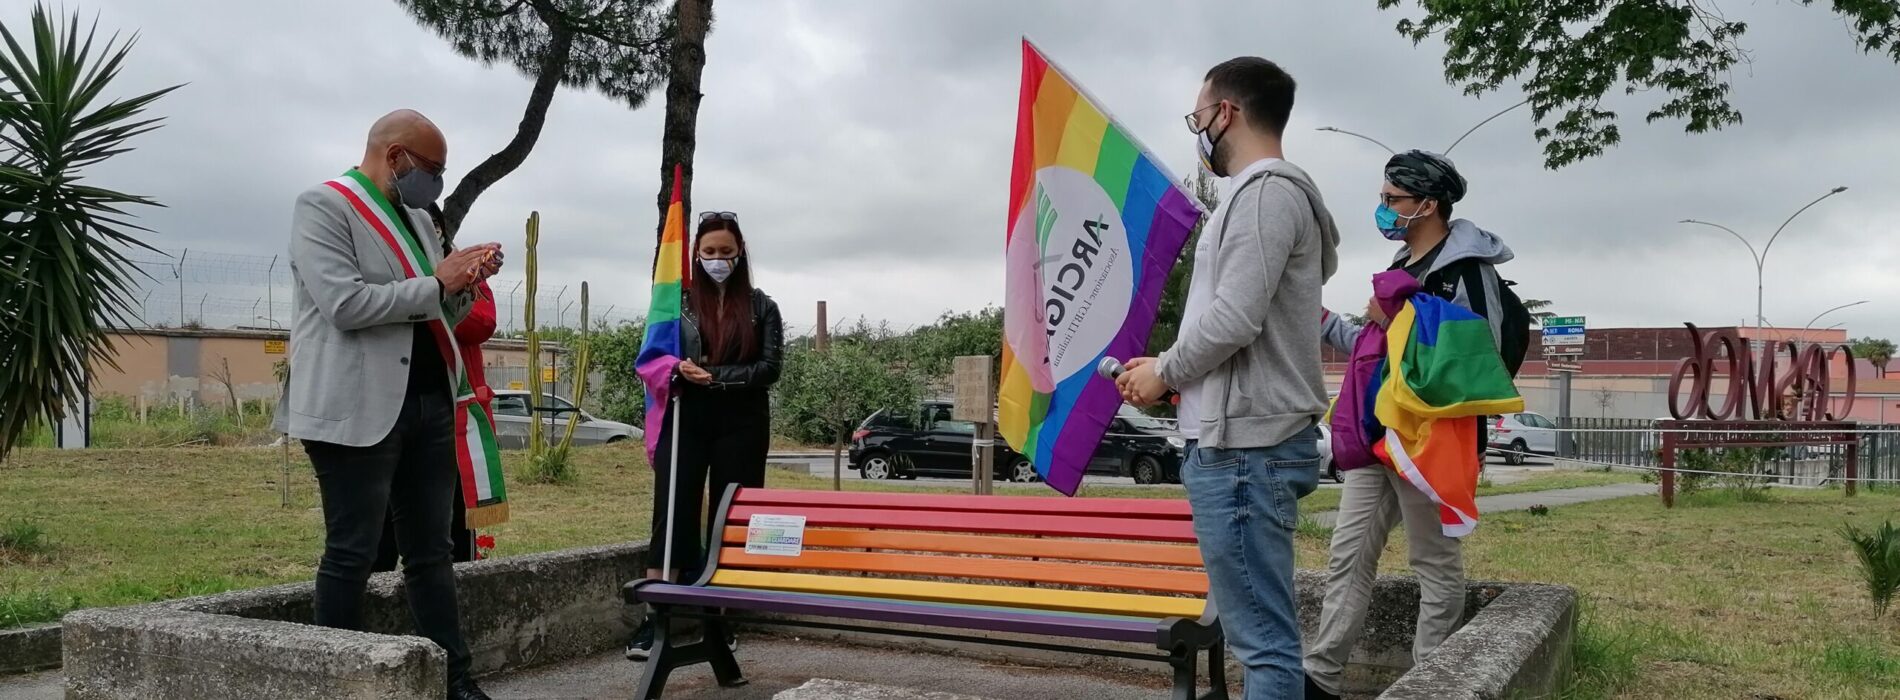 No alle discriminazioni, la panchina contro l’omofobia a Capua